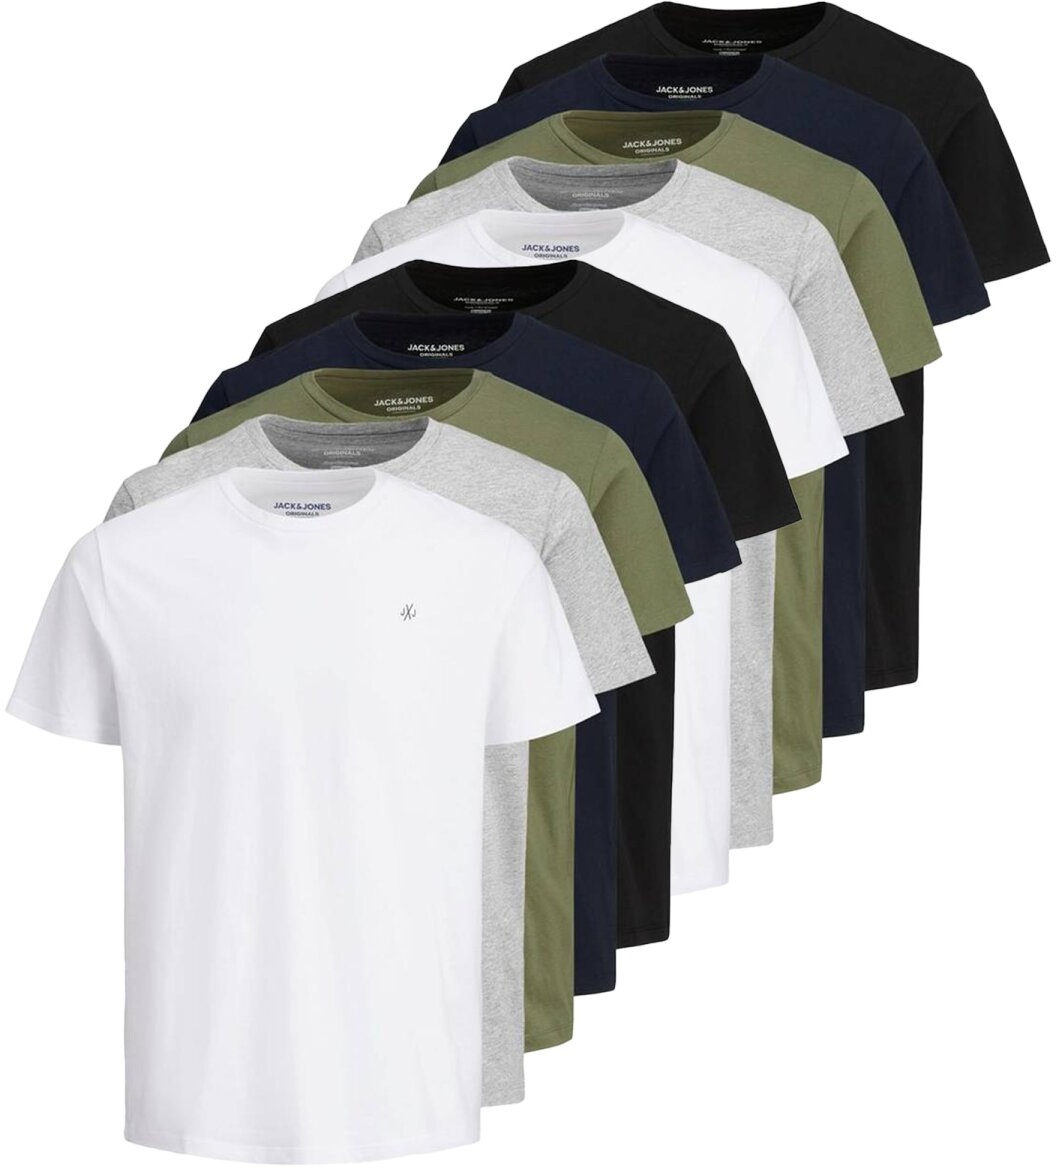 JACK&JONES Herren T-Shirt, 10er Pack - JORJXJ, T-Shirt, kurzarm, Rundhals, Baumwolle, Logo, einfarbig Weiß/Grau/Grün/Blau/Schwarz S